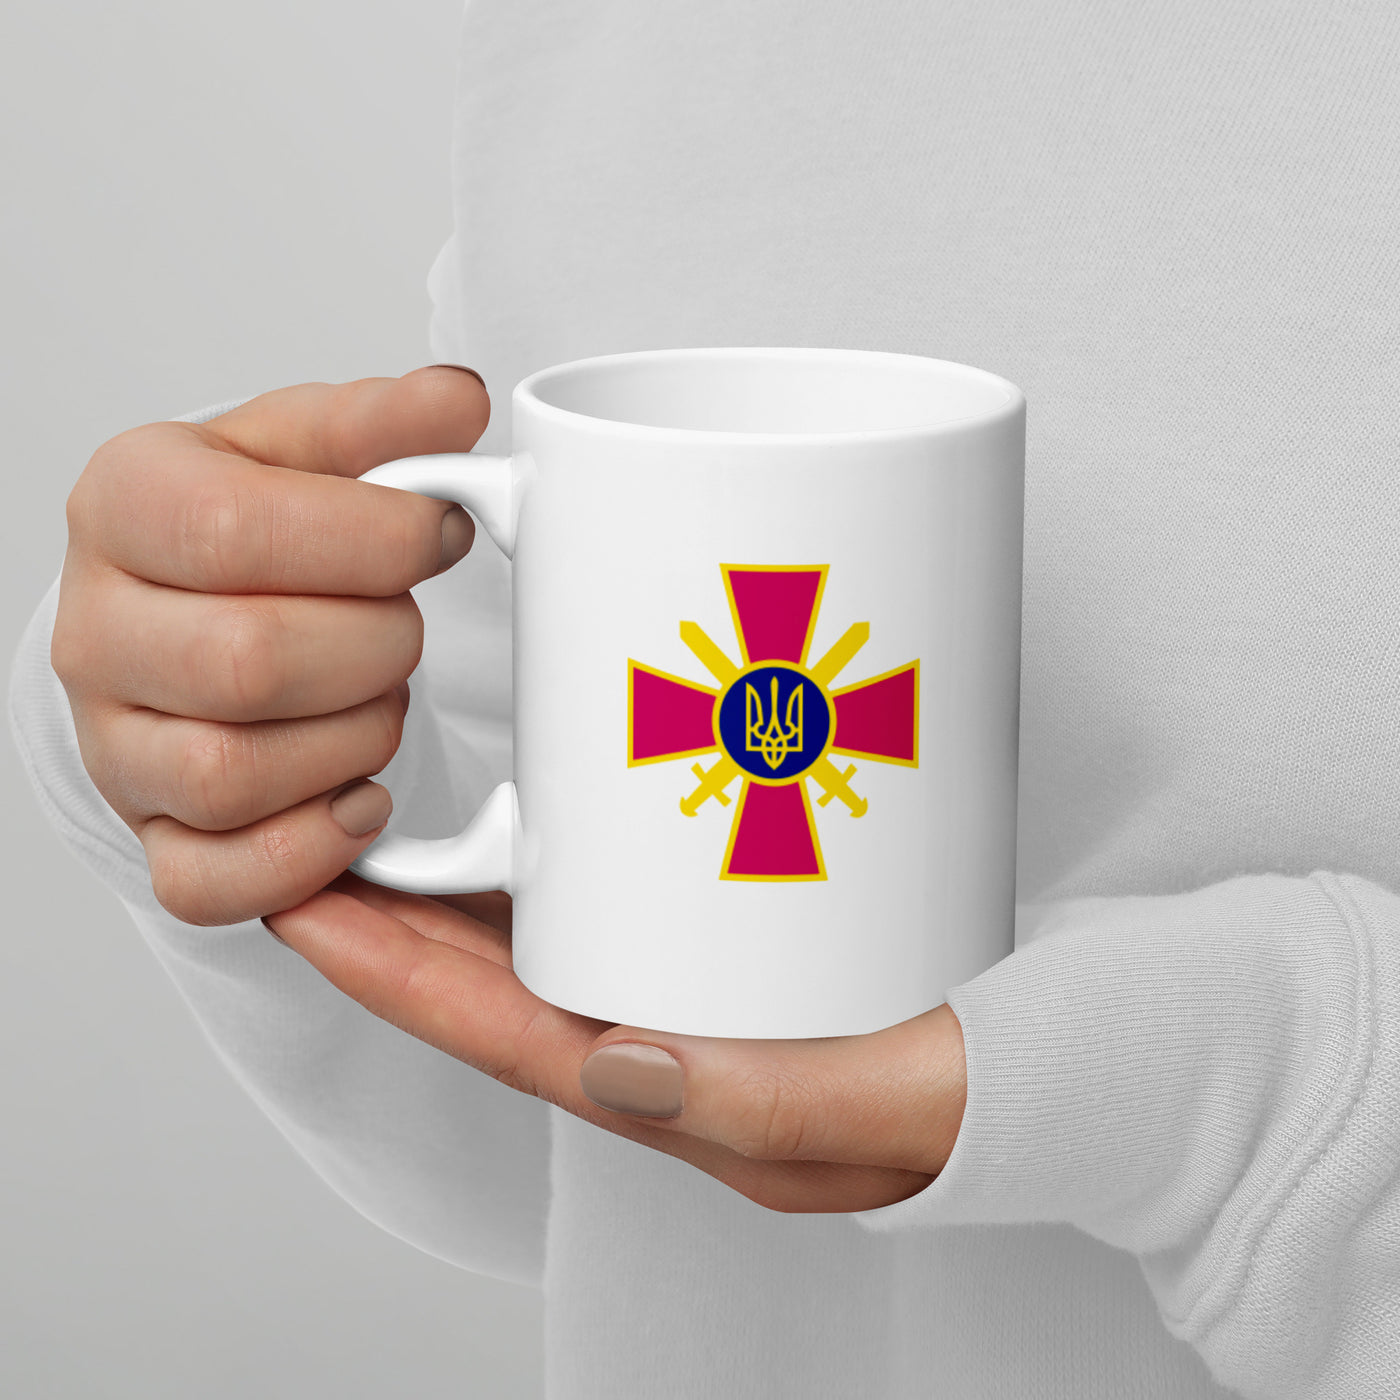 Ukrainian Military Emblem 3 Mug